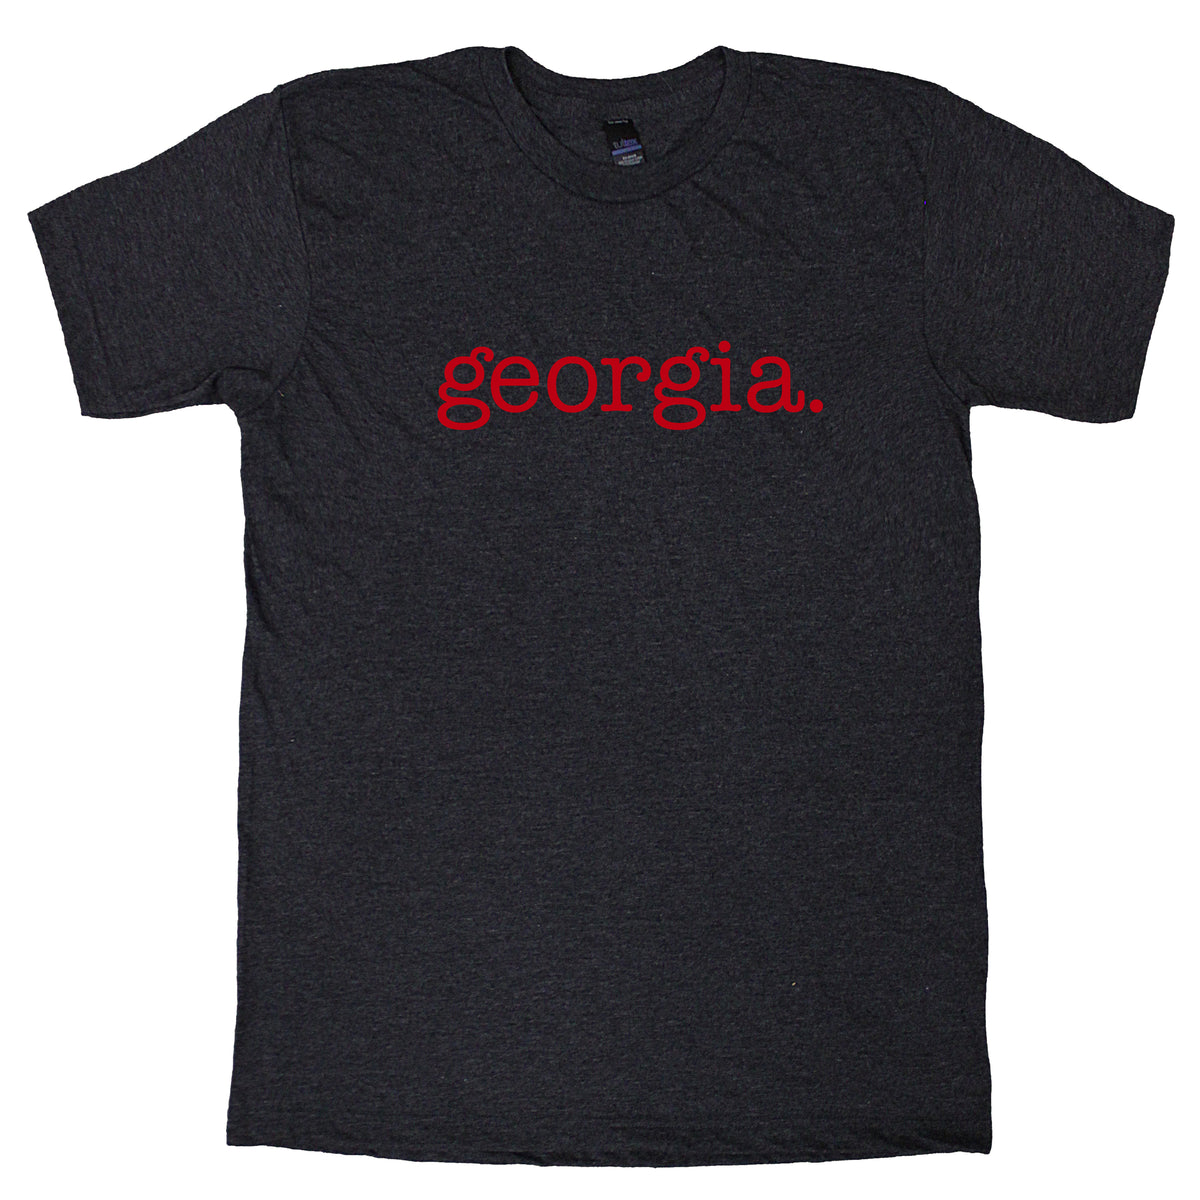 georgia. T-Shirt